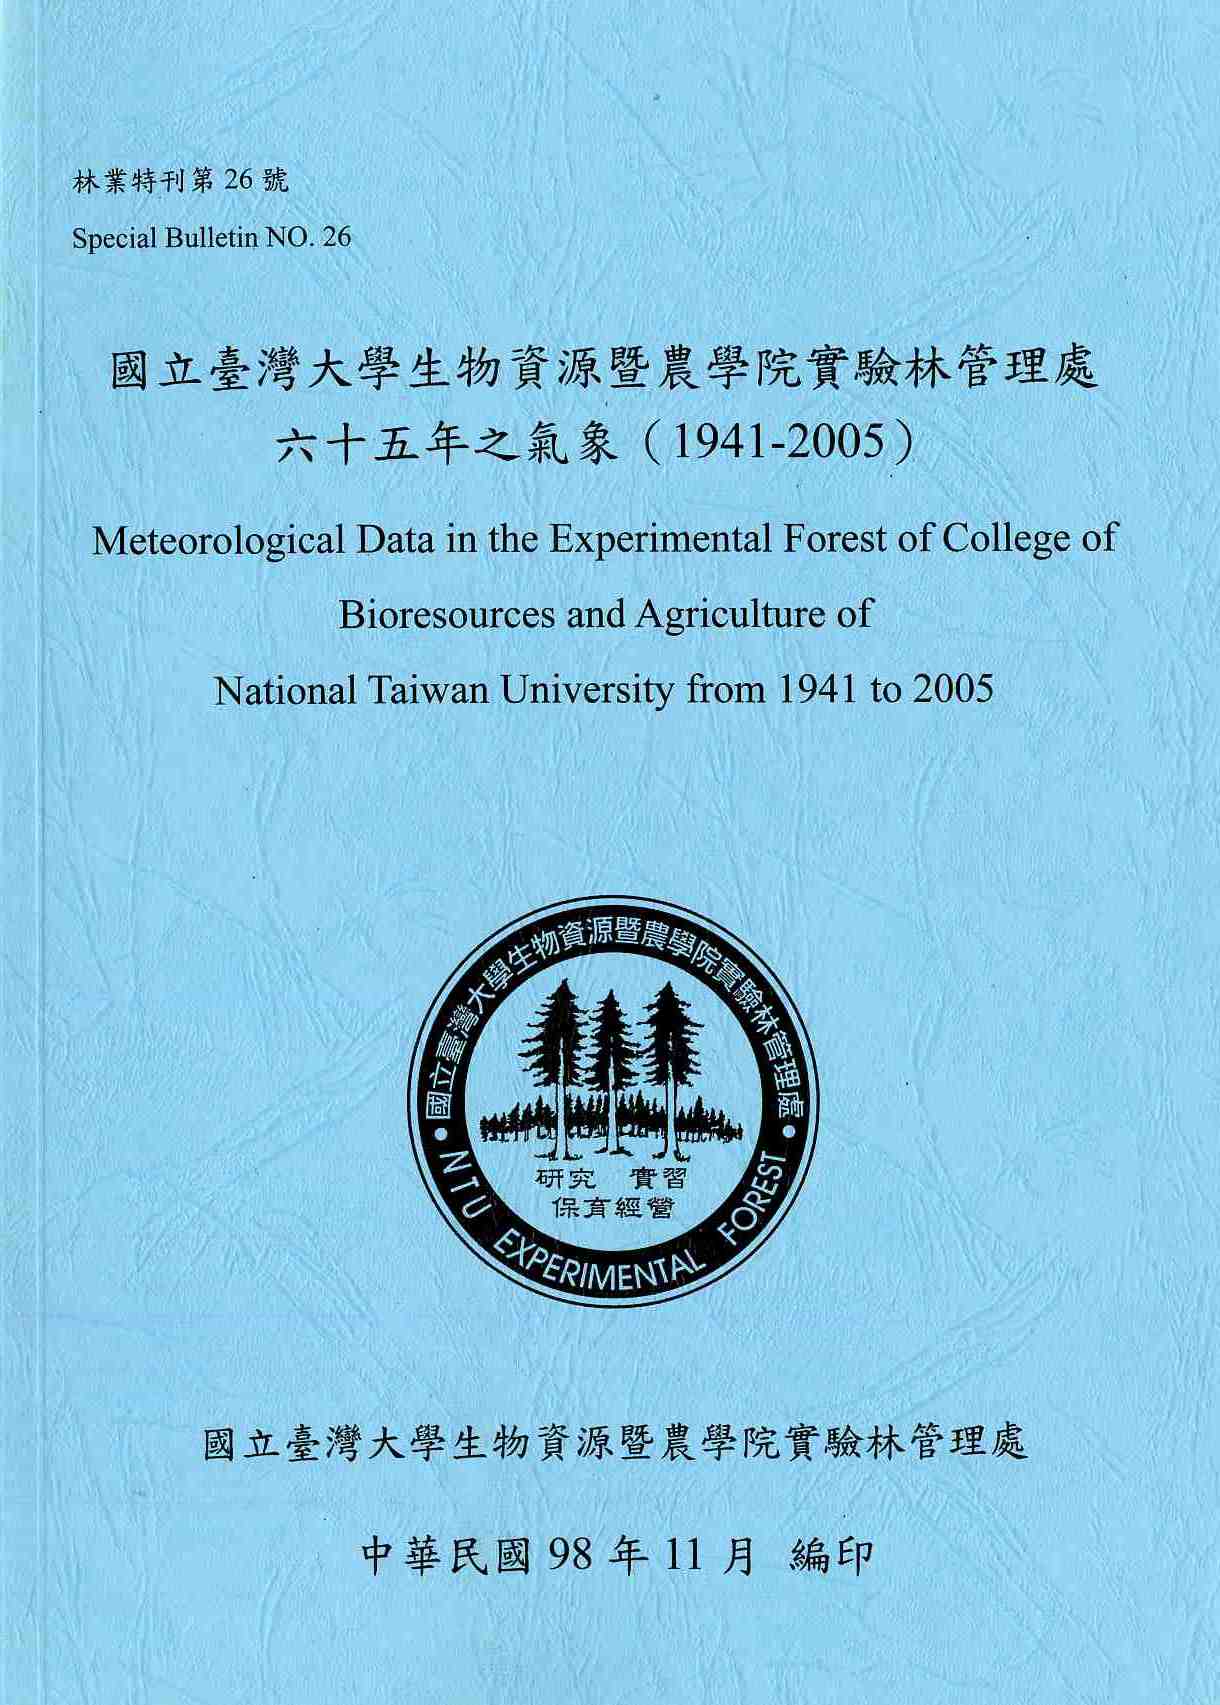 國立臺灣大學生物資源暨農學院實驗林管理處六十五年之氣象(1941-2005)